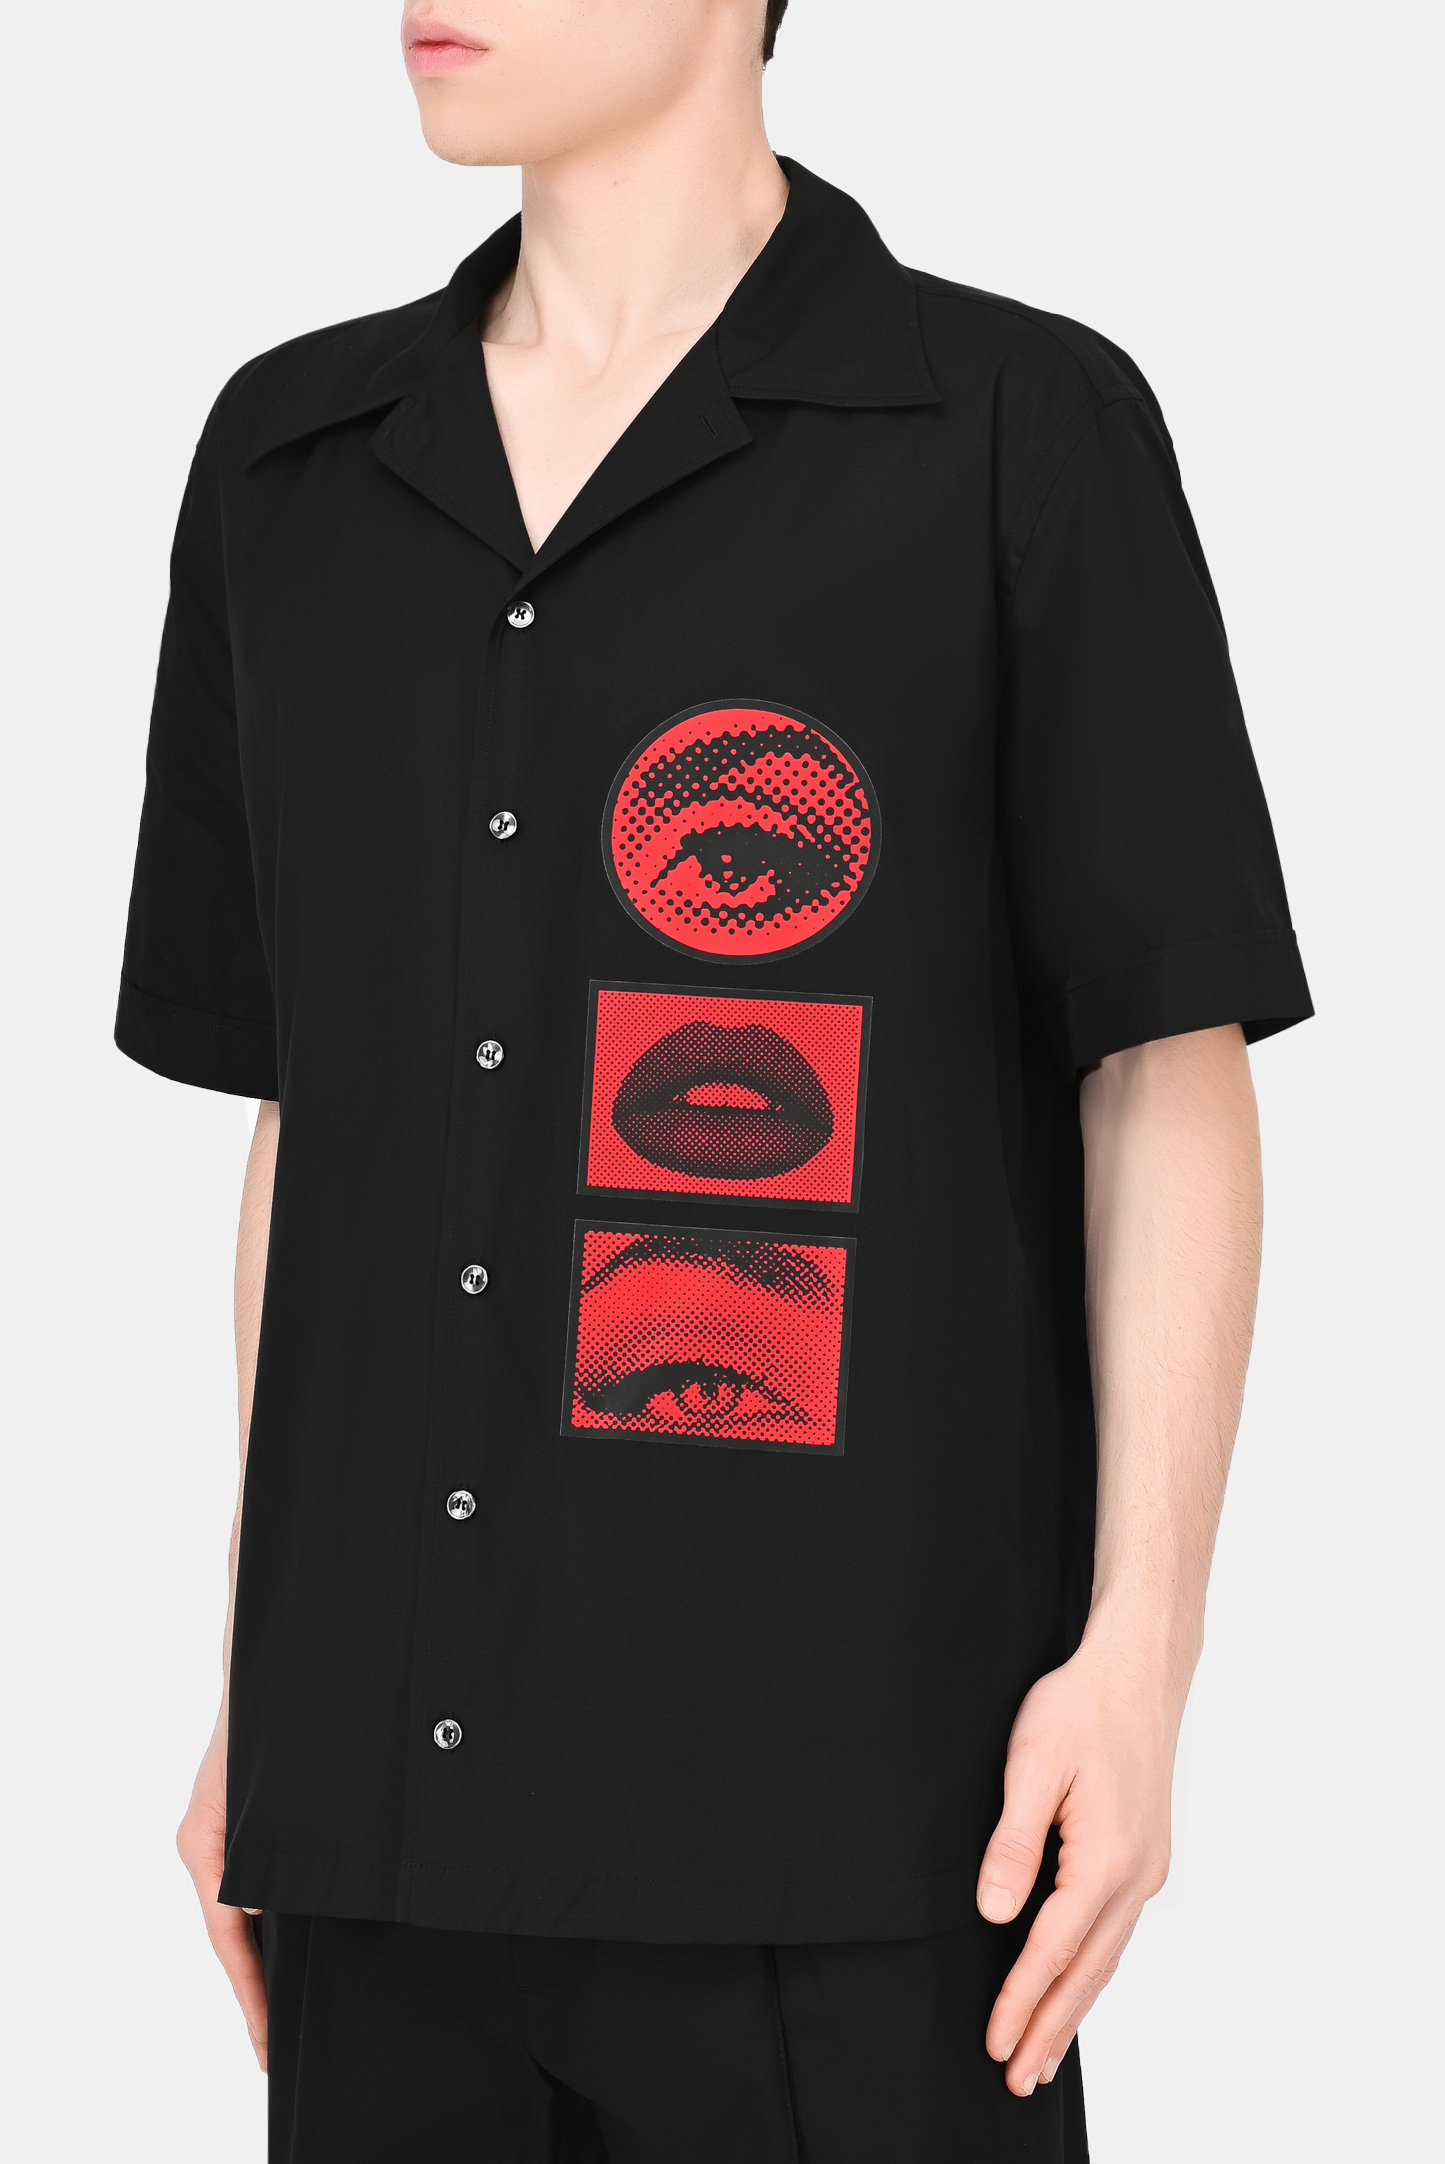 Рубашка DOLCE & GABBANA G5JG5T FU5TI, цвет: Черный, Мужской